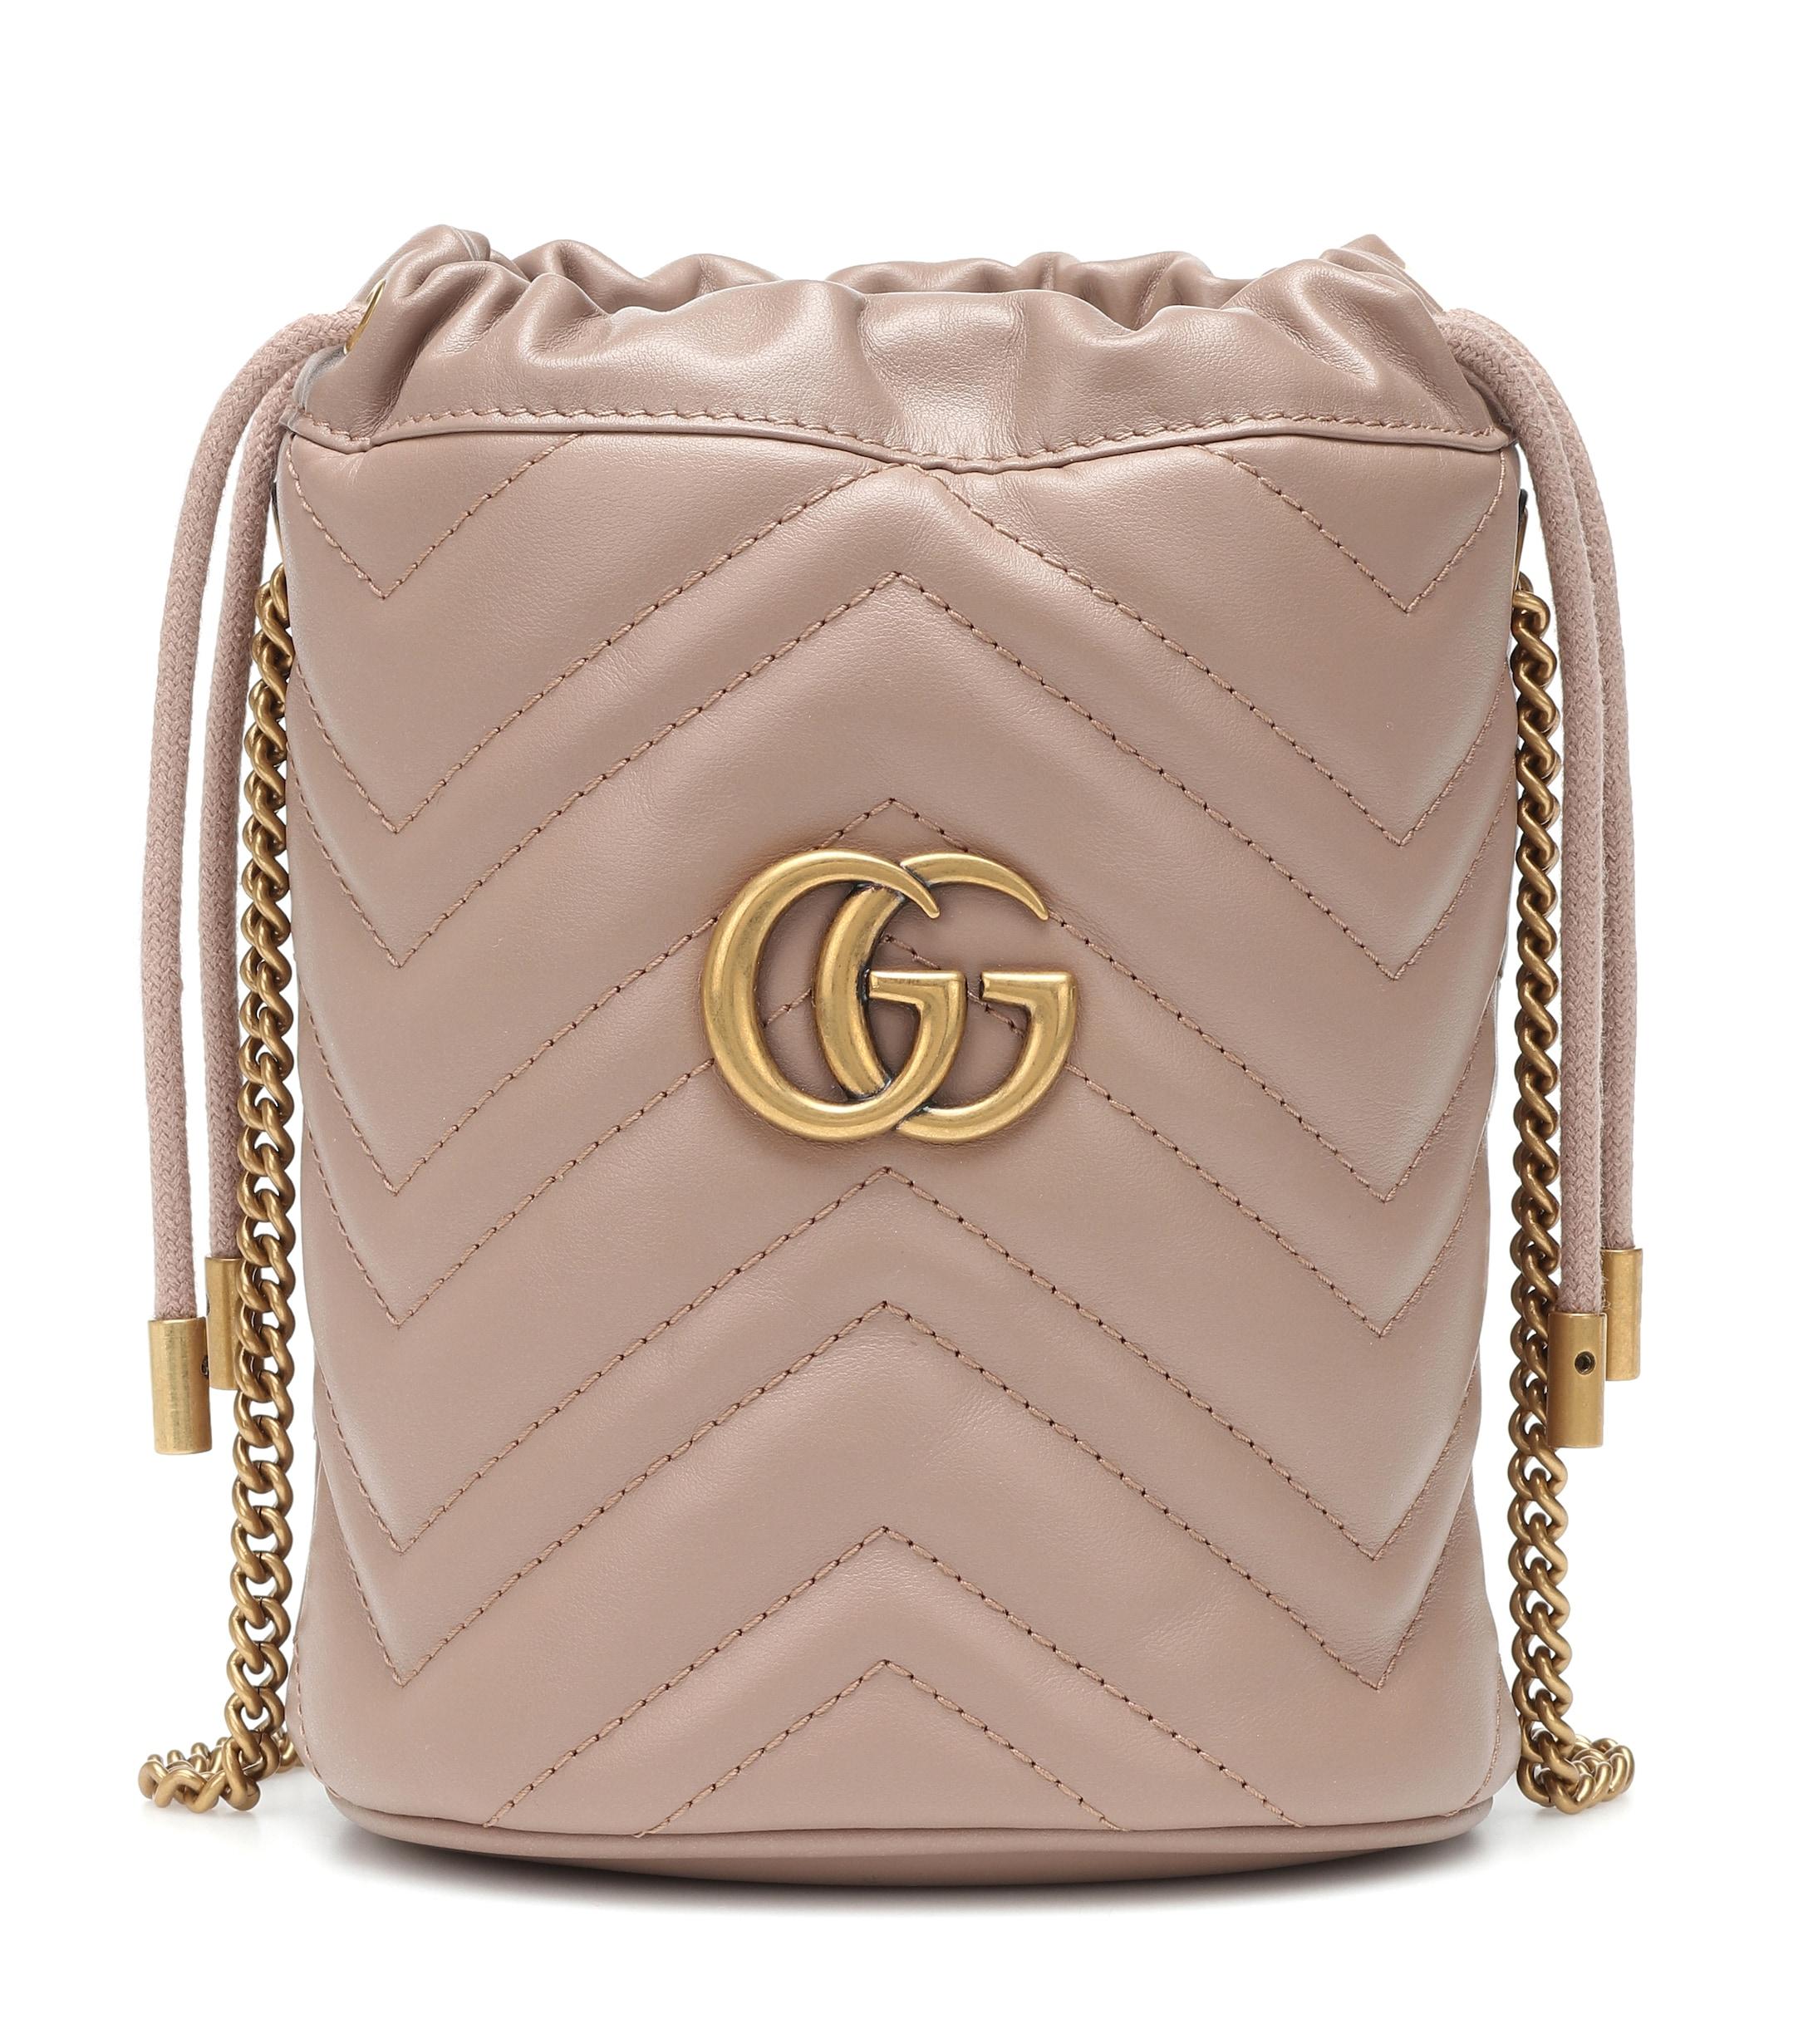 Gg Marmont Mini Bucket Bag